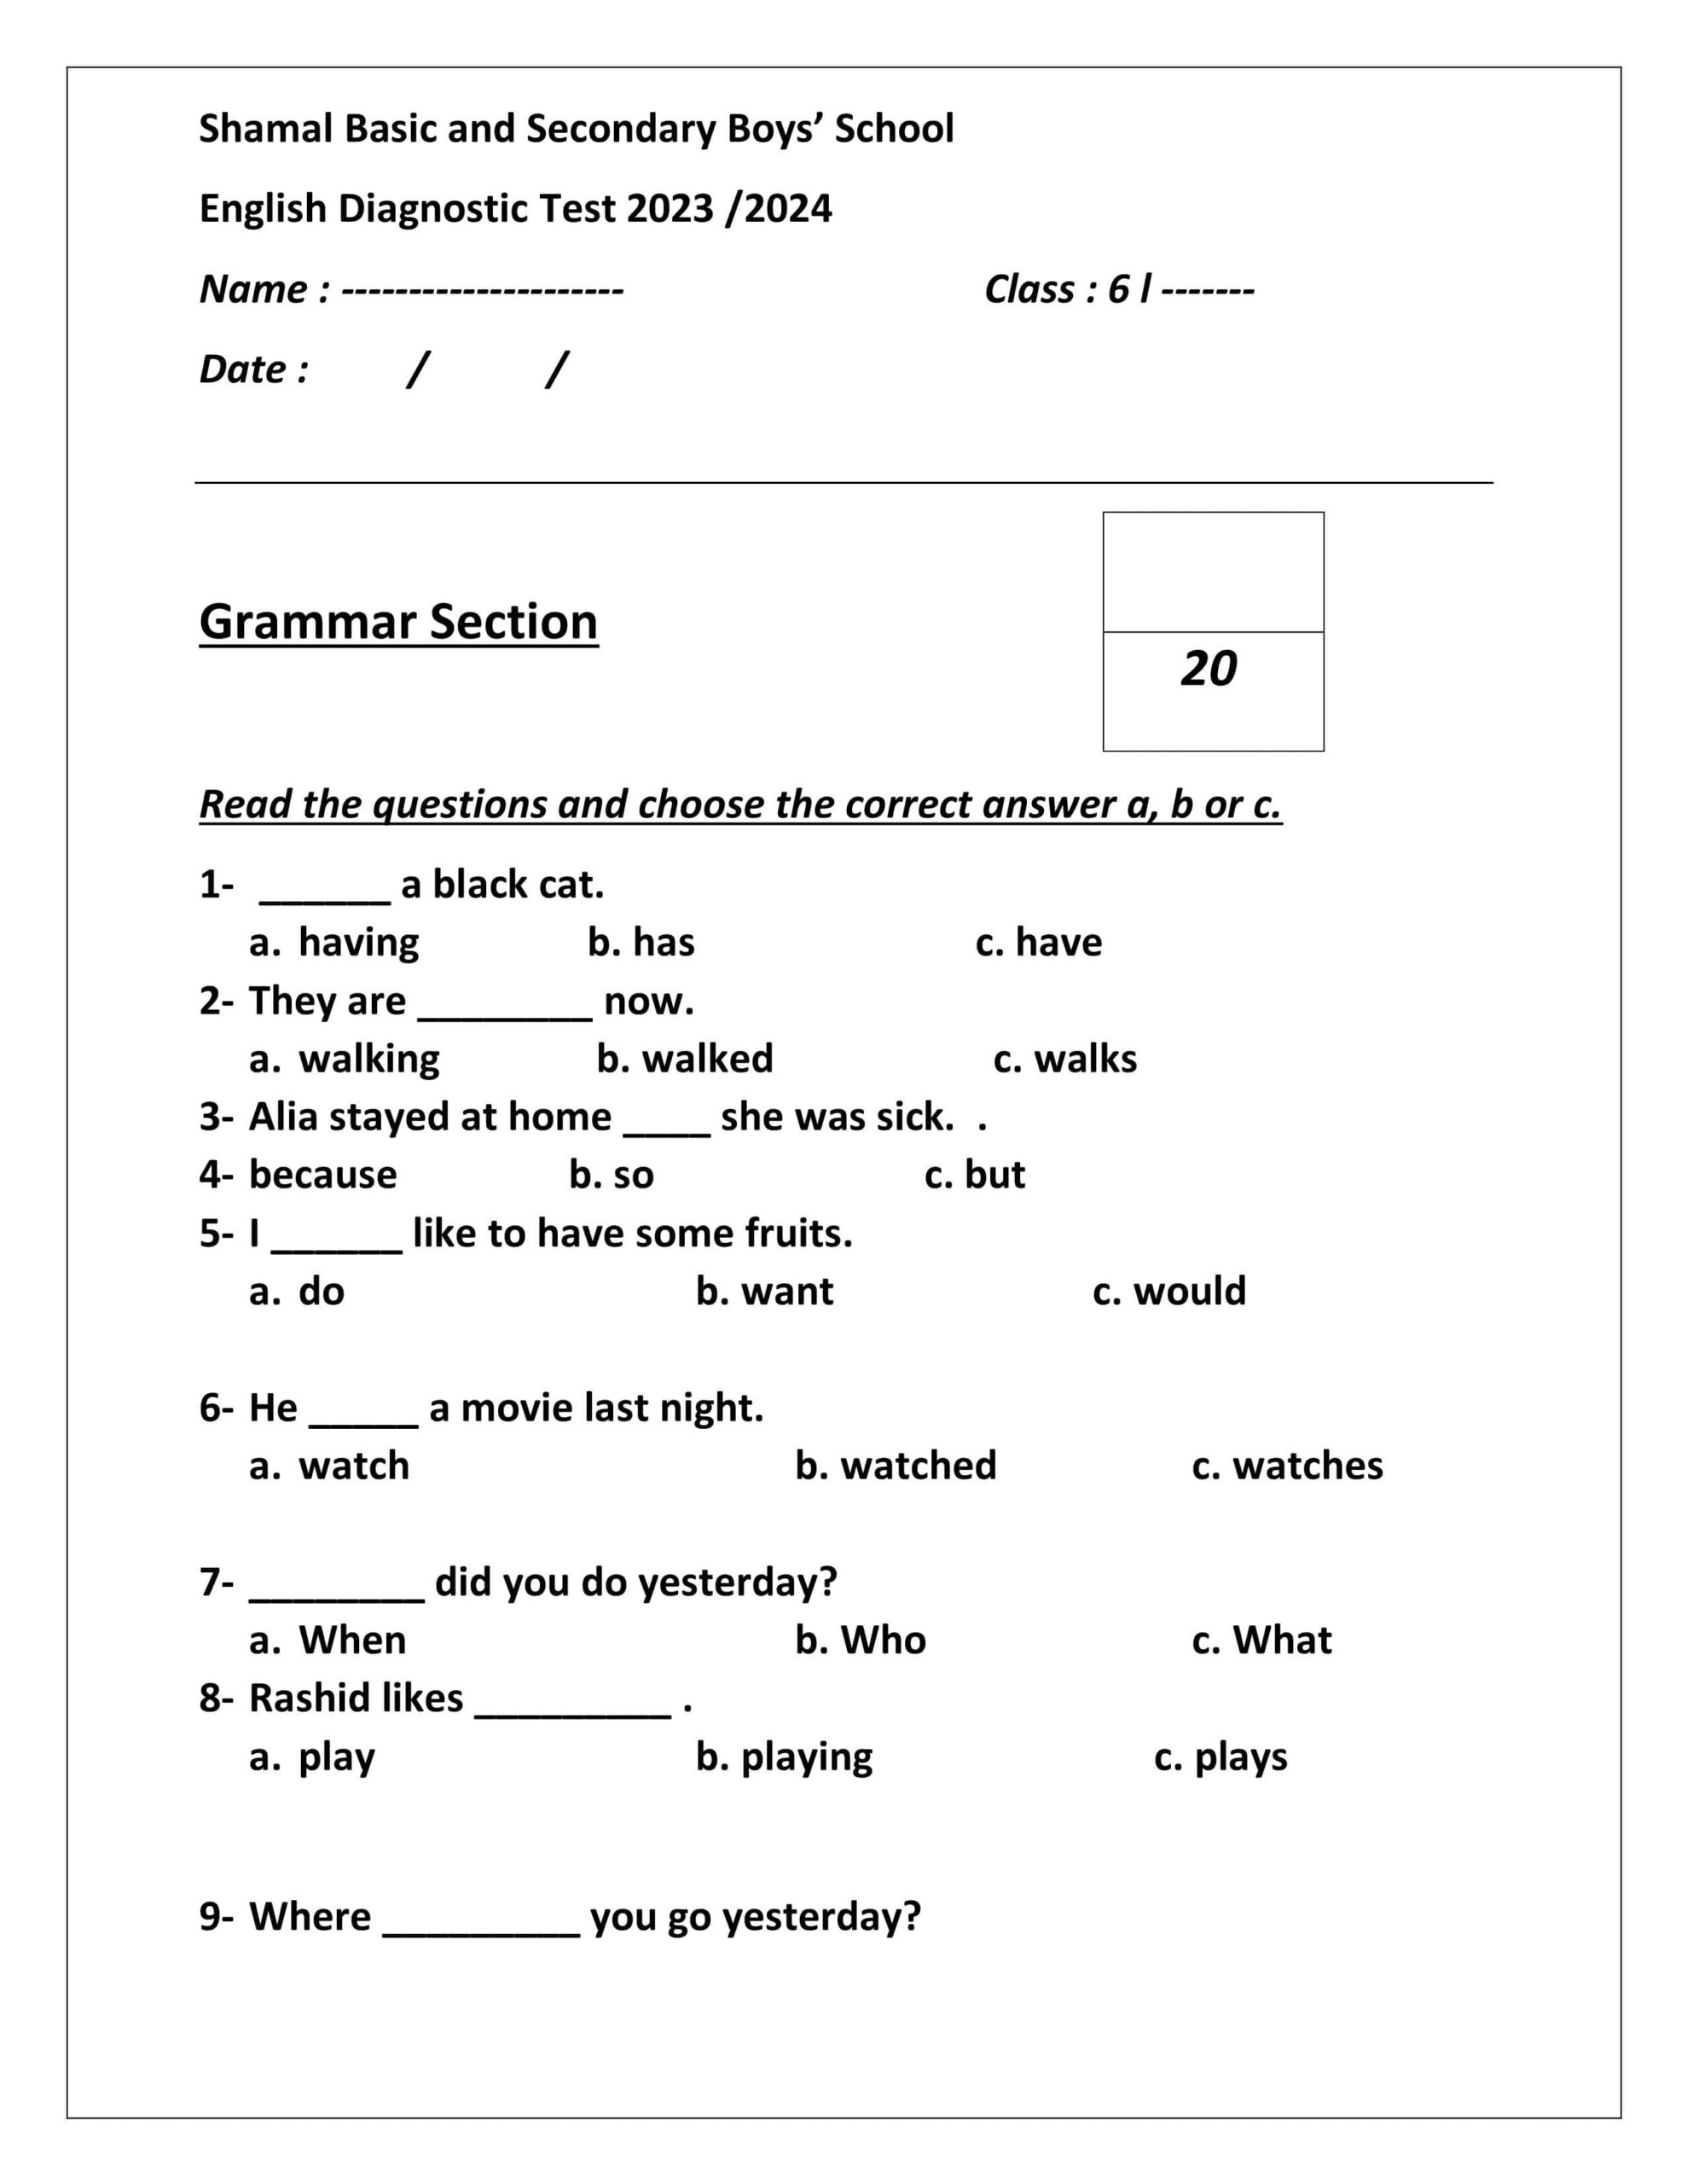 اختبار Diagnostic Test اللغة الإنجليزية الصف السادس الفصل الدراسي الأول 2023-2024